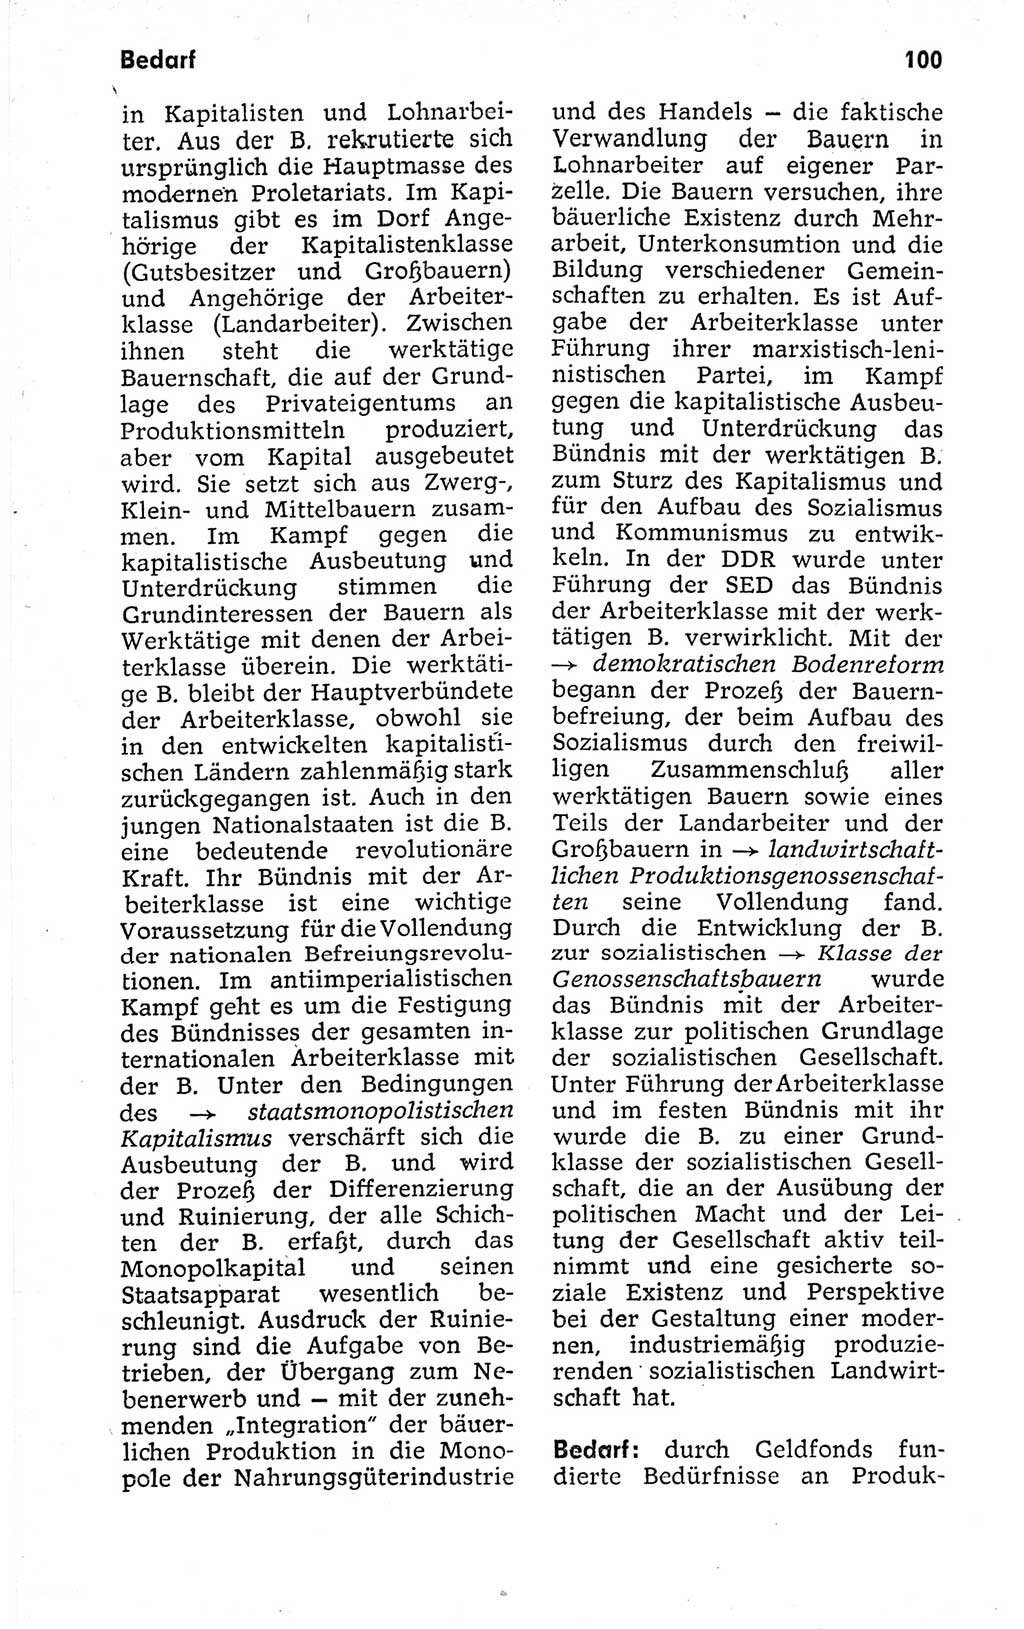 Kleines politisches Wörterbuch [Deutsche Demokratische Republik (DDR)] 1973, Seite 100 (Kl. pol. Wb. DDR 1973, S. 100)